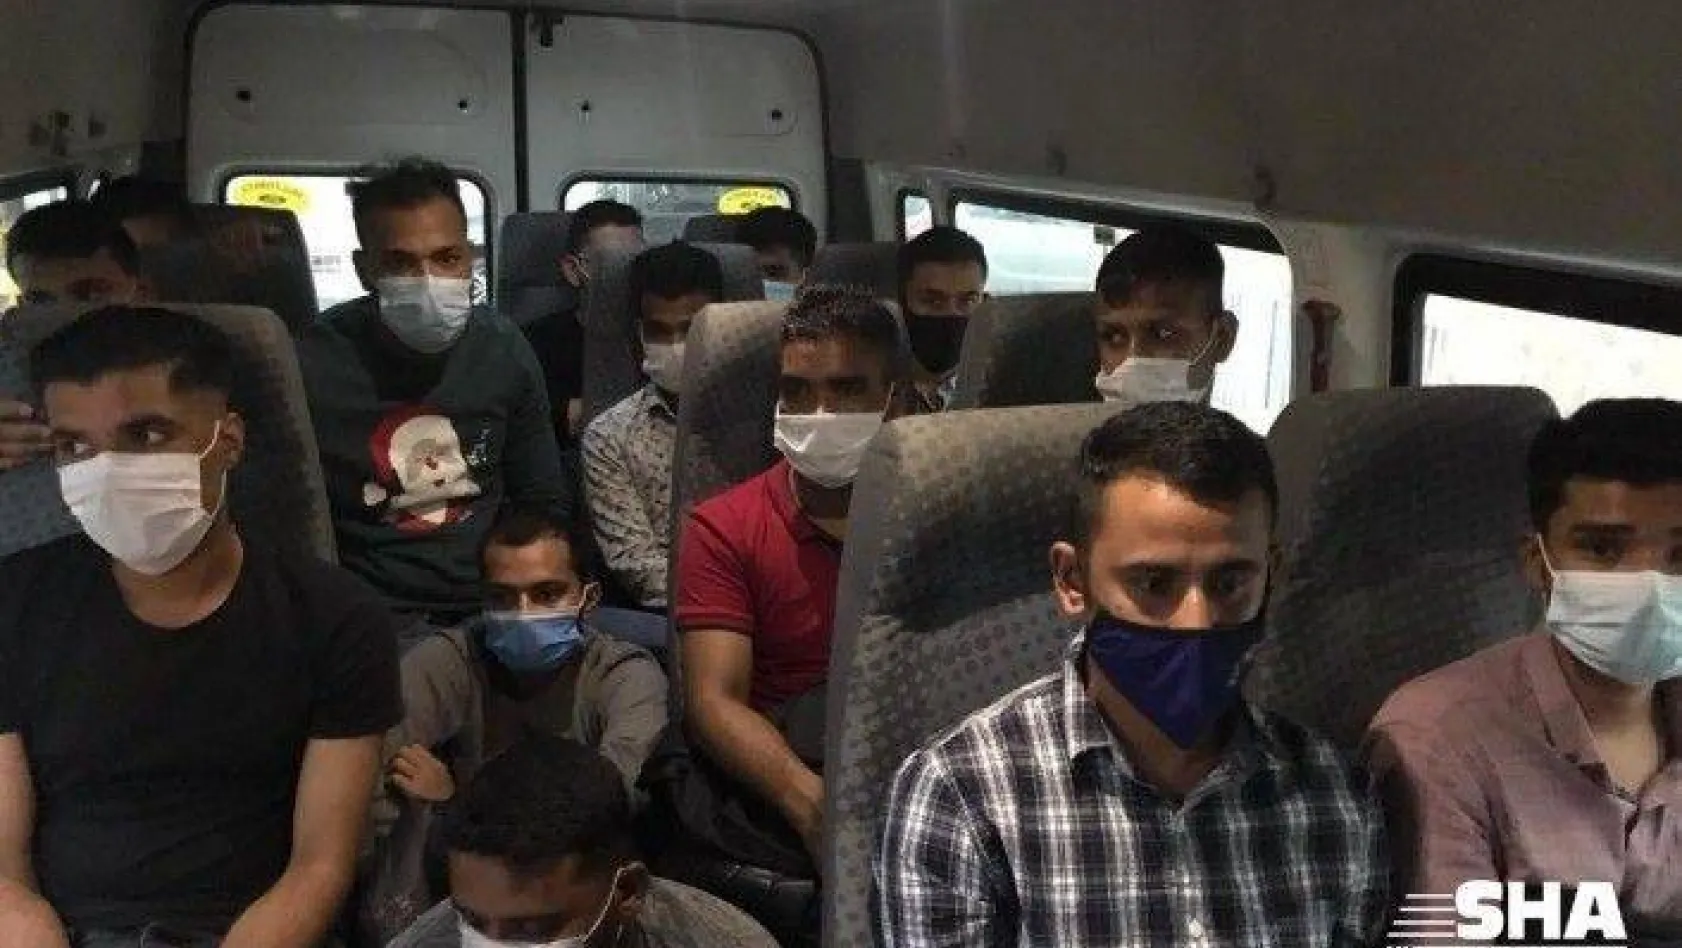 İstanbul'da göçmen kaçakçılığı operasyonu